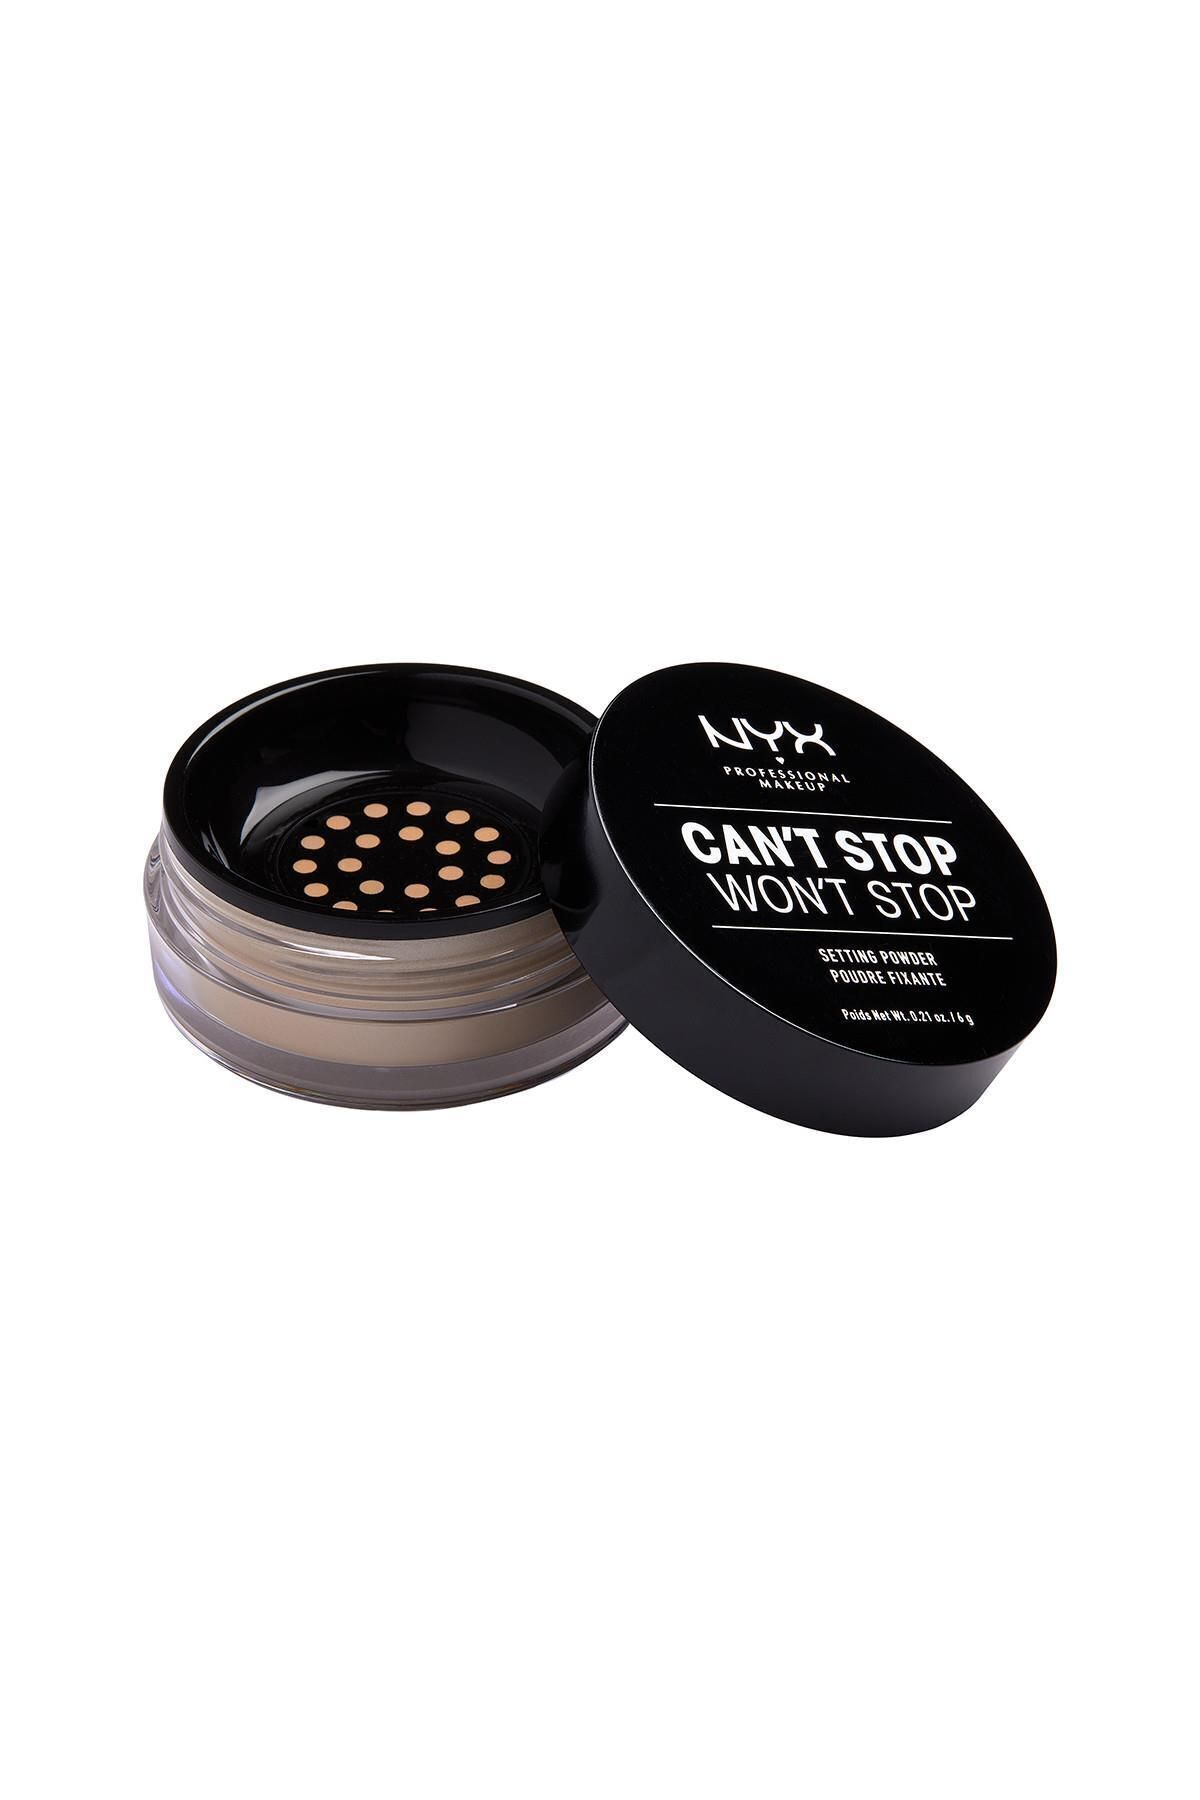 NYX Professional Makeup Sabitleyici Pudra - Can't Stop Won't Stop Setting Powder Medium 800897183714